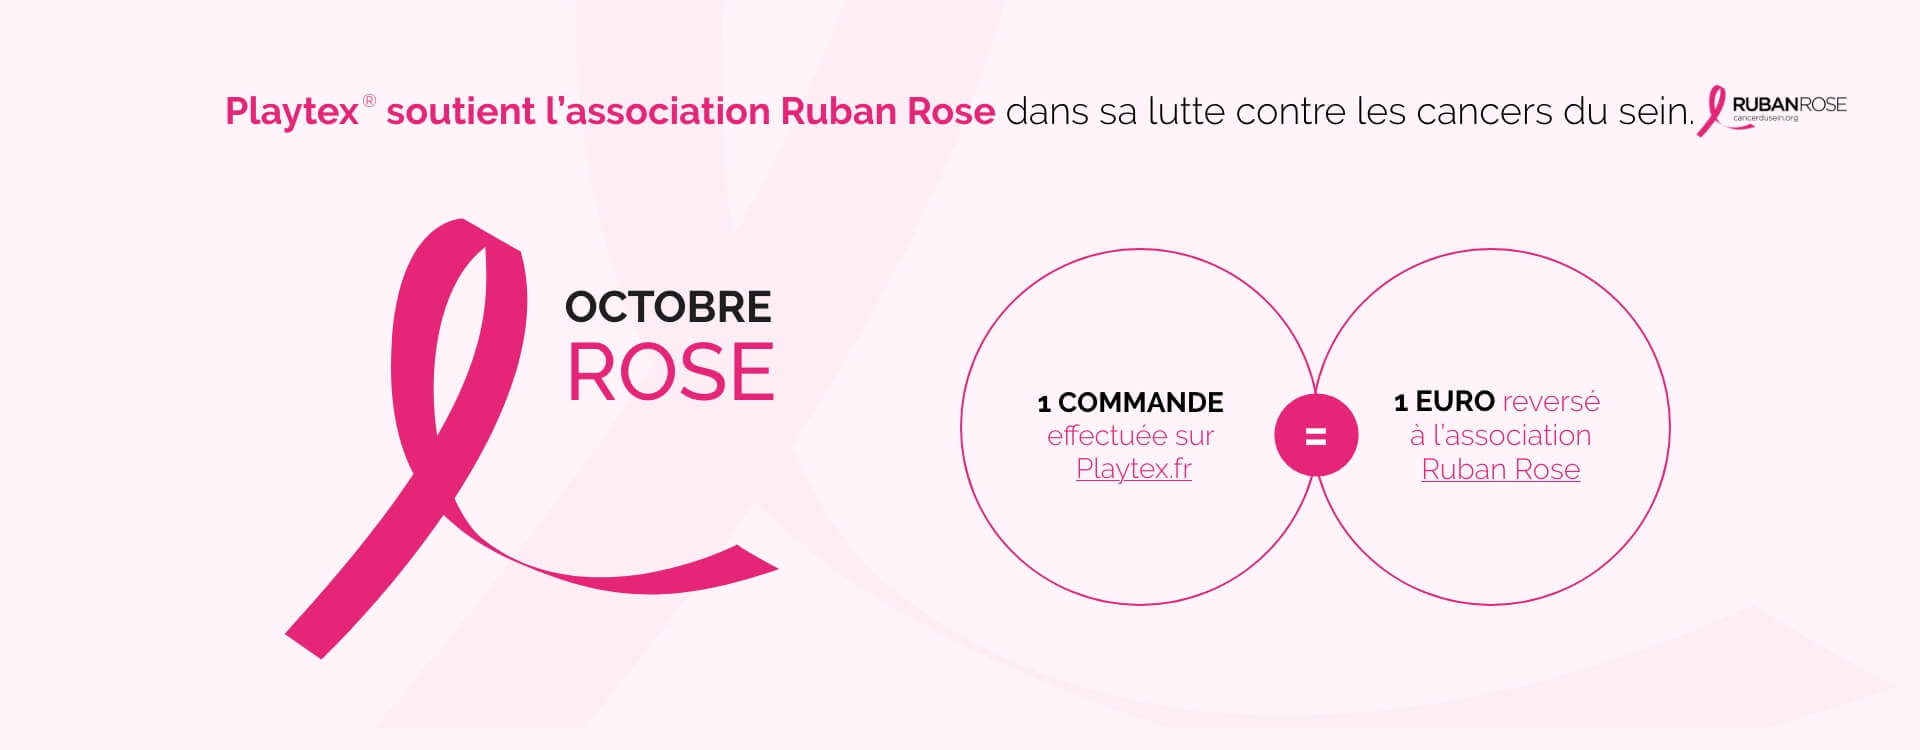 Playtex soutient l’association Ruban Rose dans sa lutte contre les cancers du sein. - 1 commande = 1 euro reversé à l'association Ruban Rose